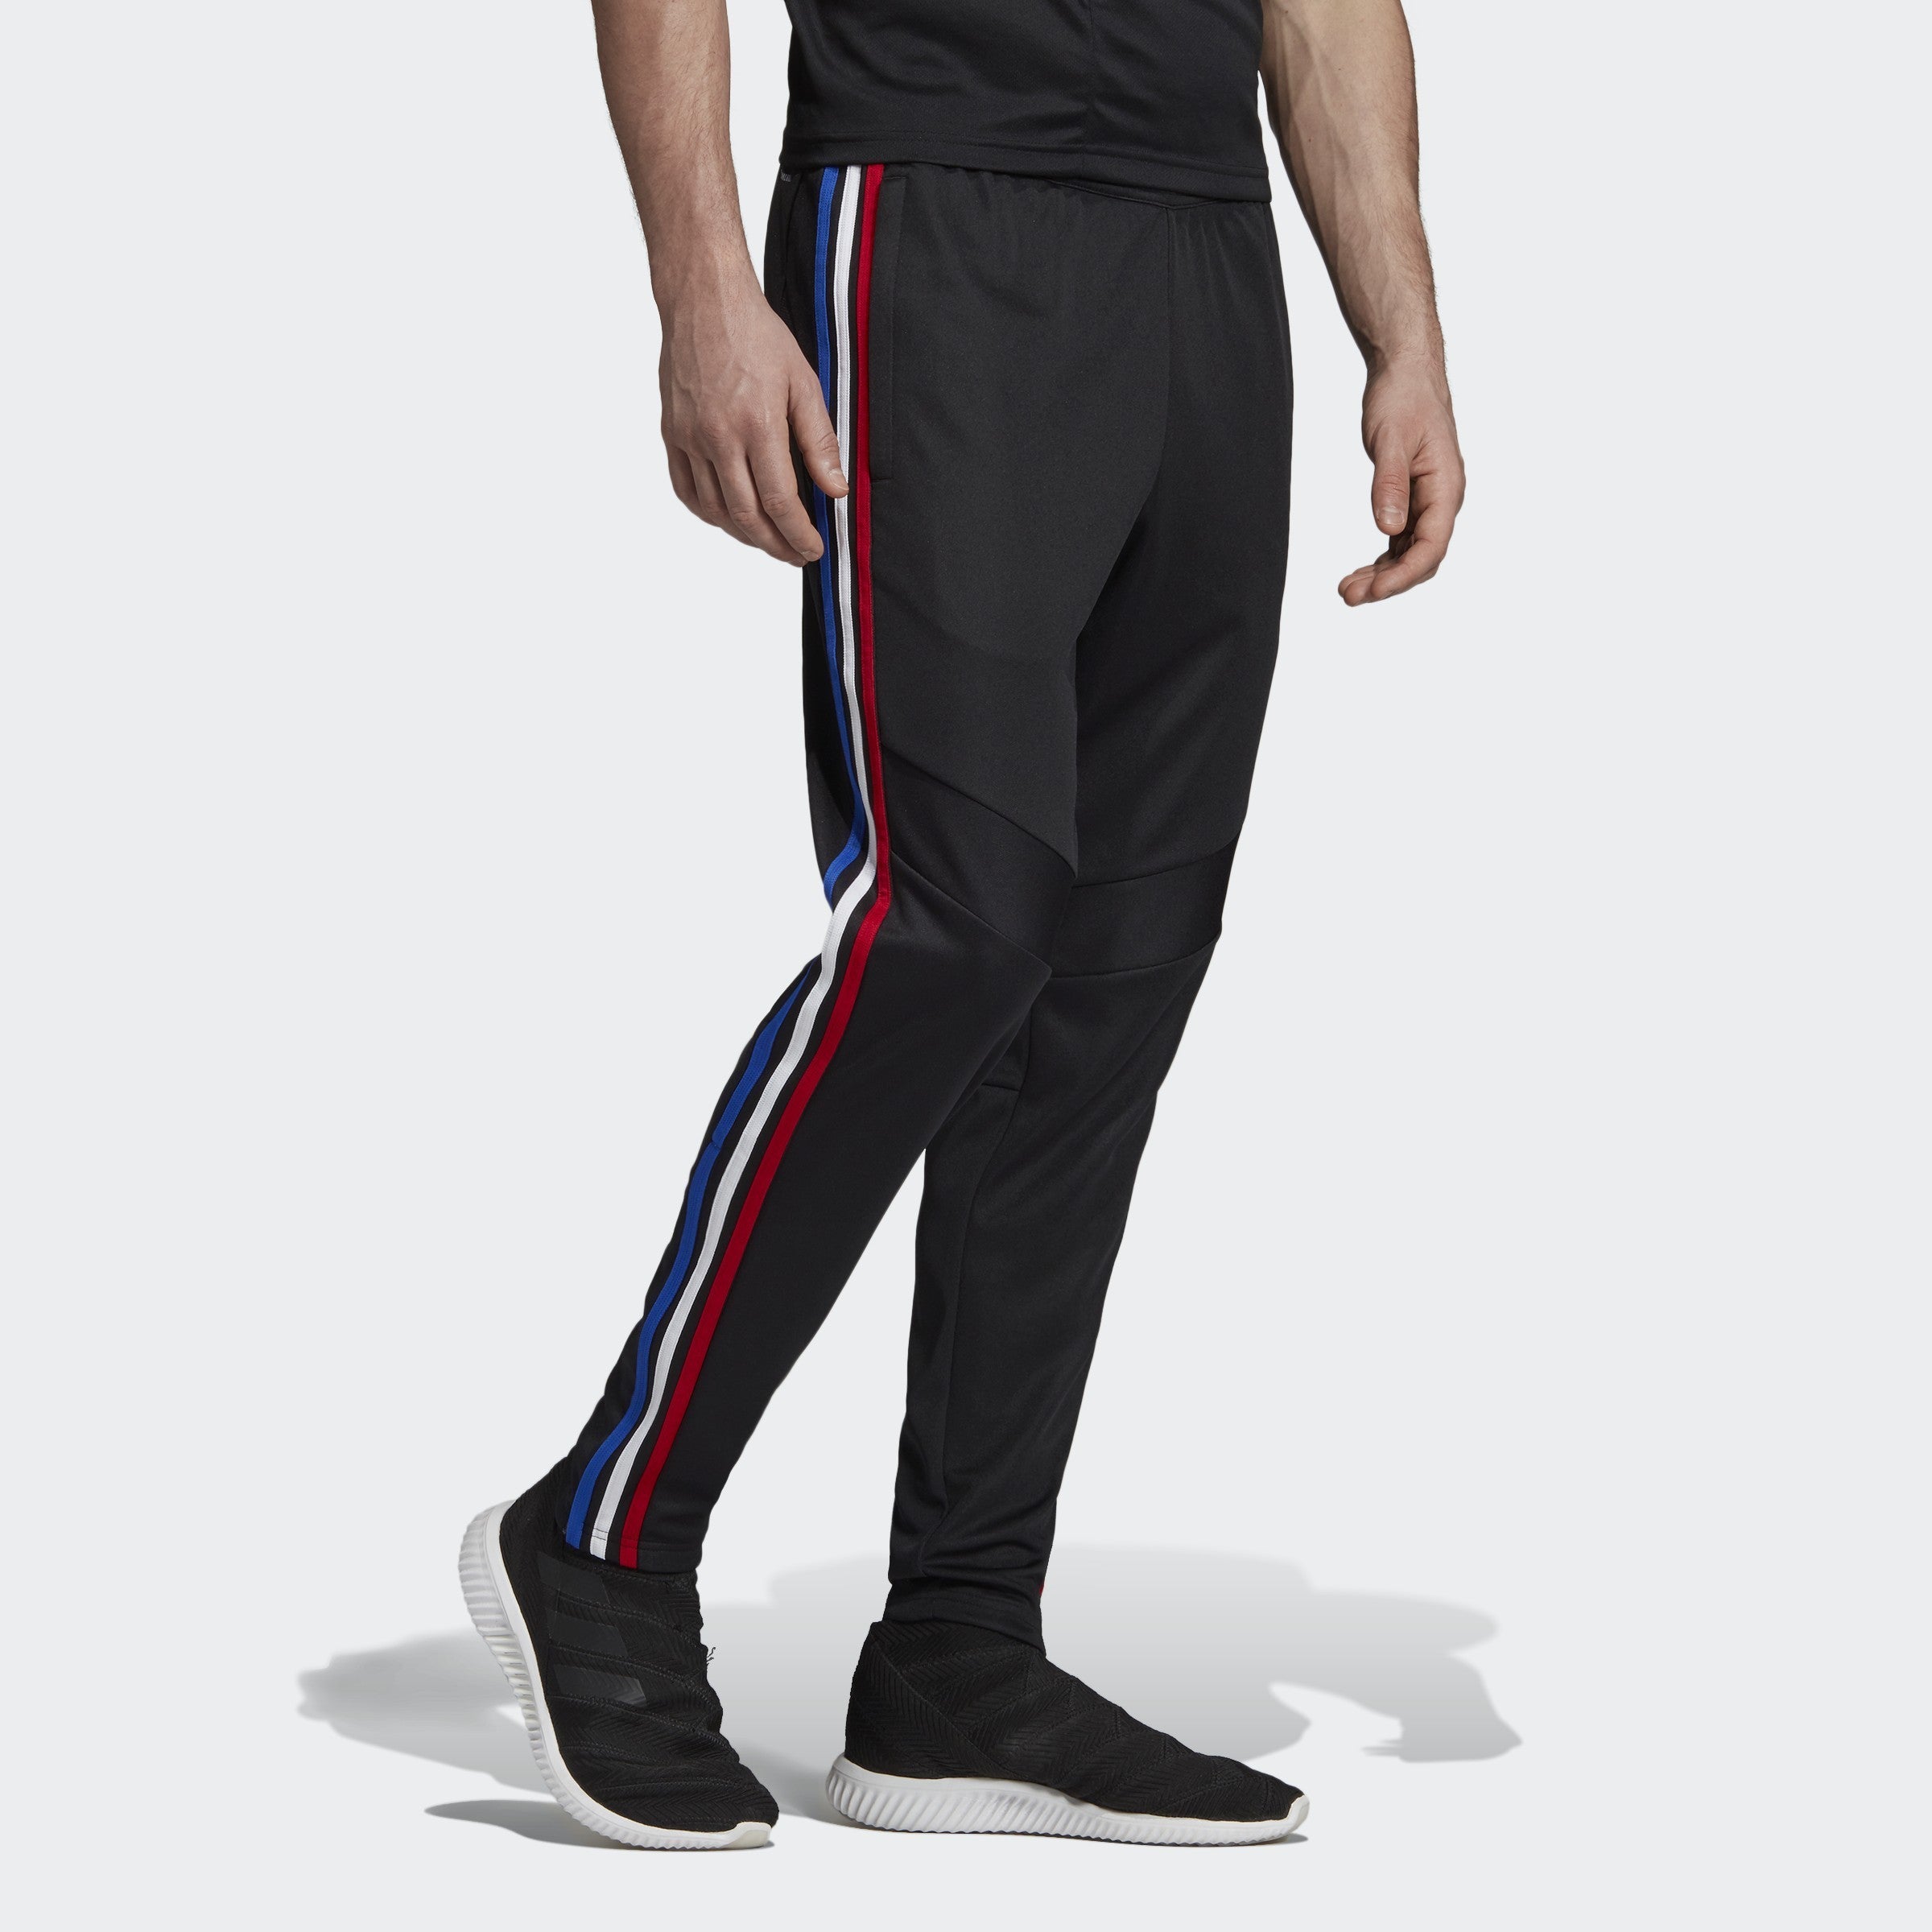 Men's Tiro 19 Training Pants - Black/Power Red/White/Bold Blue